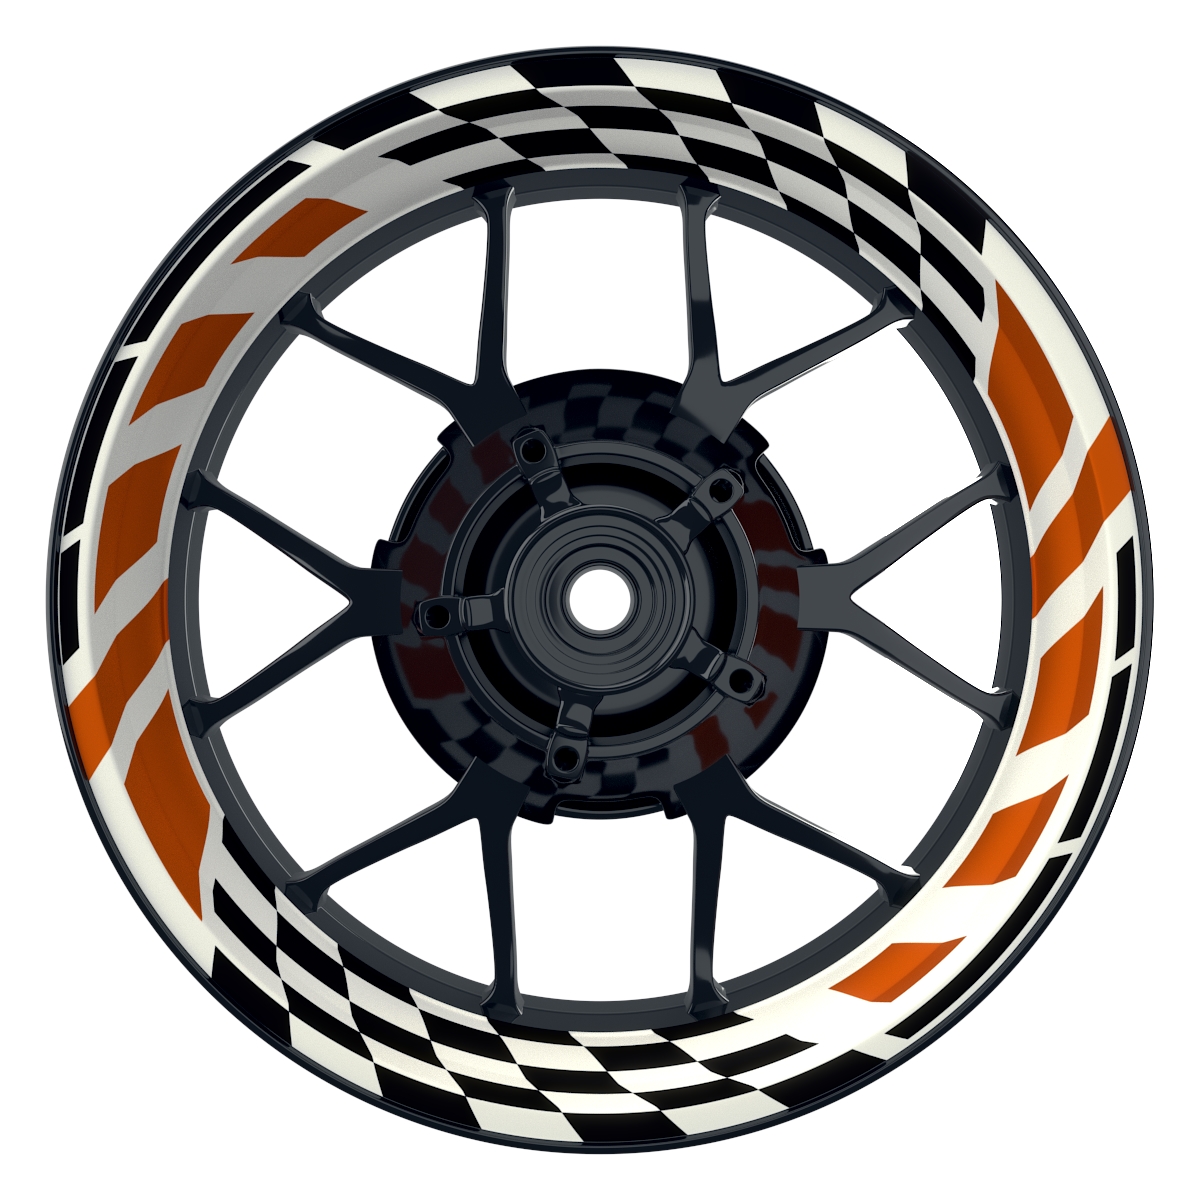 RACE weiss orange Wheelsticker Felgenaufkleber